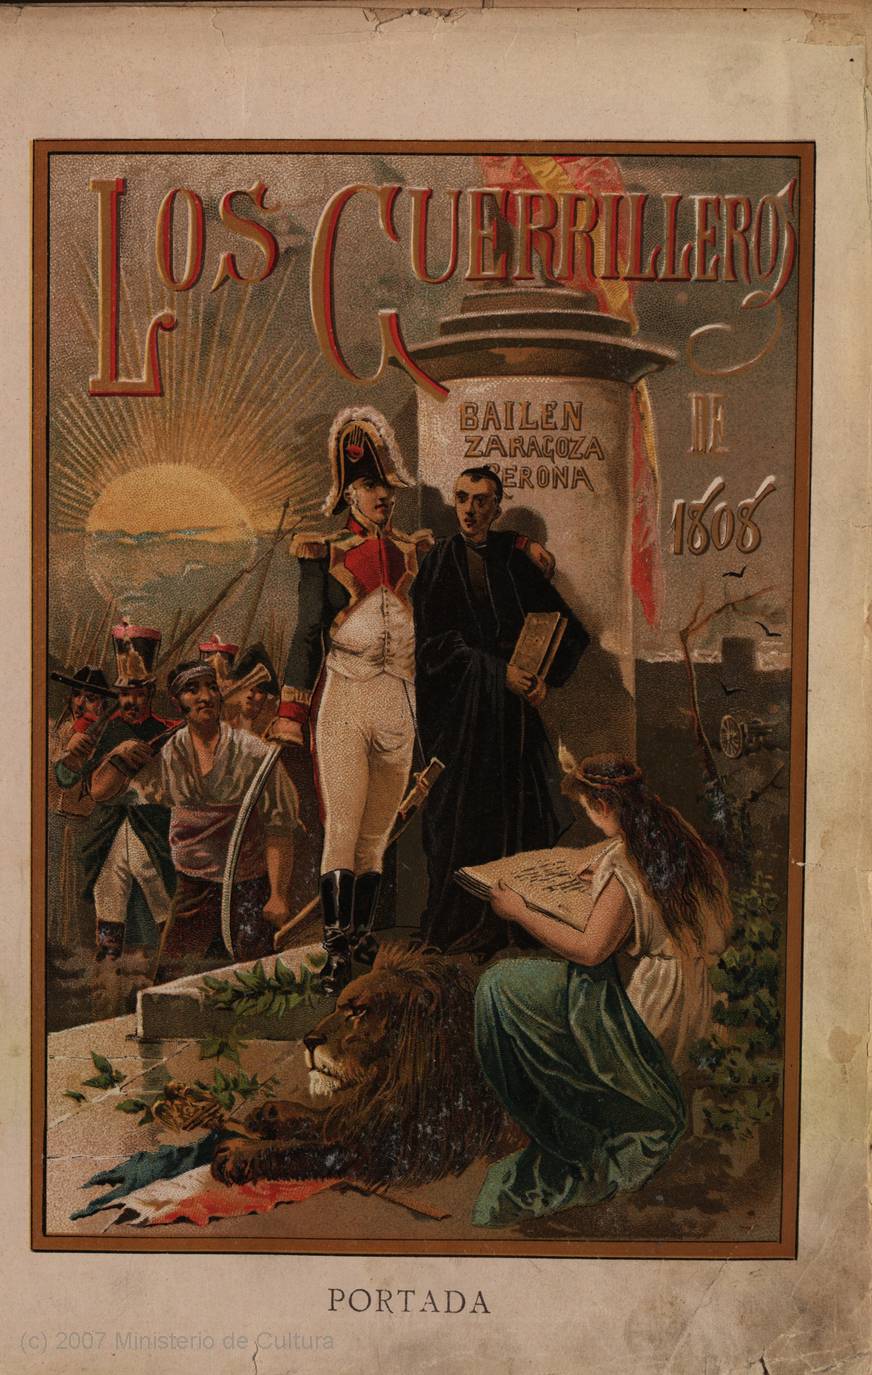 Los guerrilleros de 1808 : historia popular de la Guerra de la Independencia (1895)